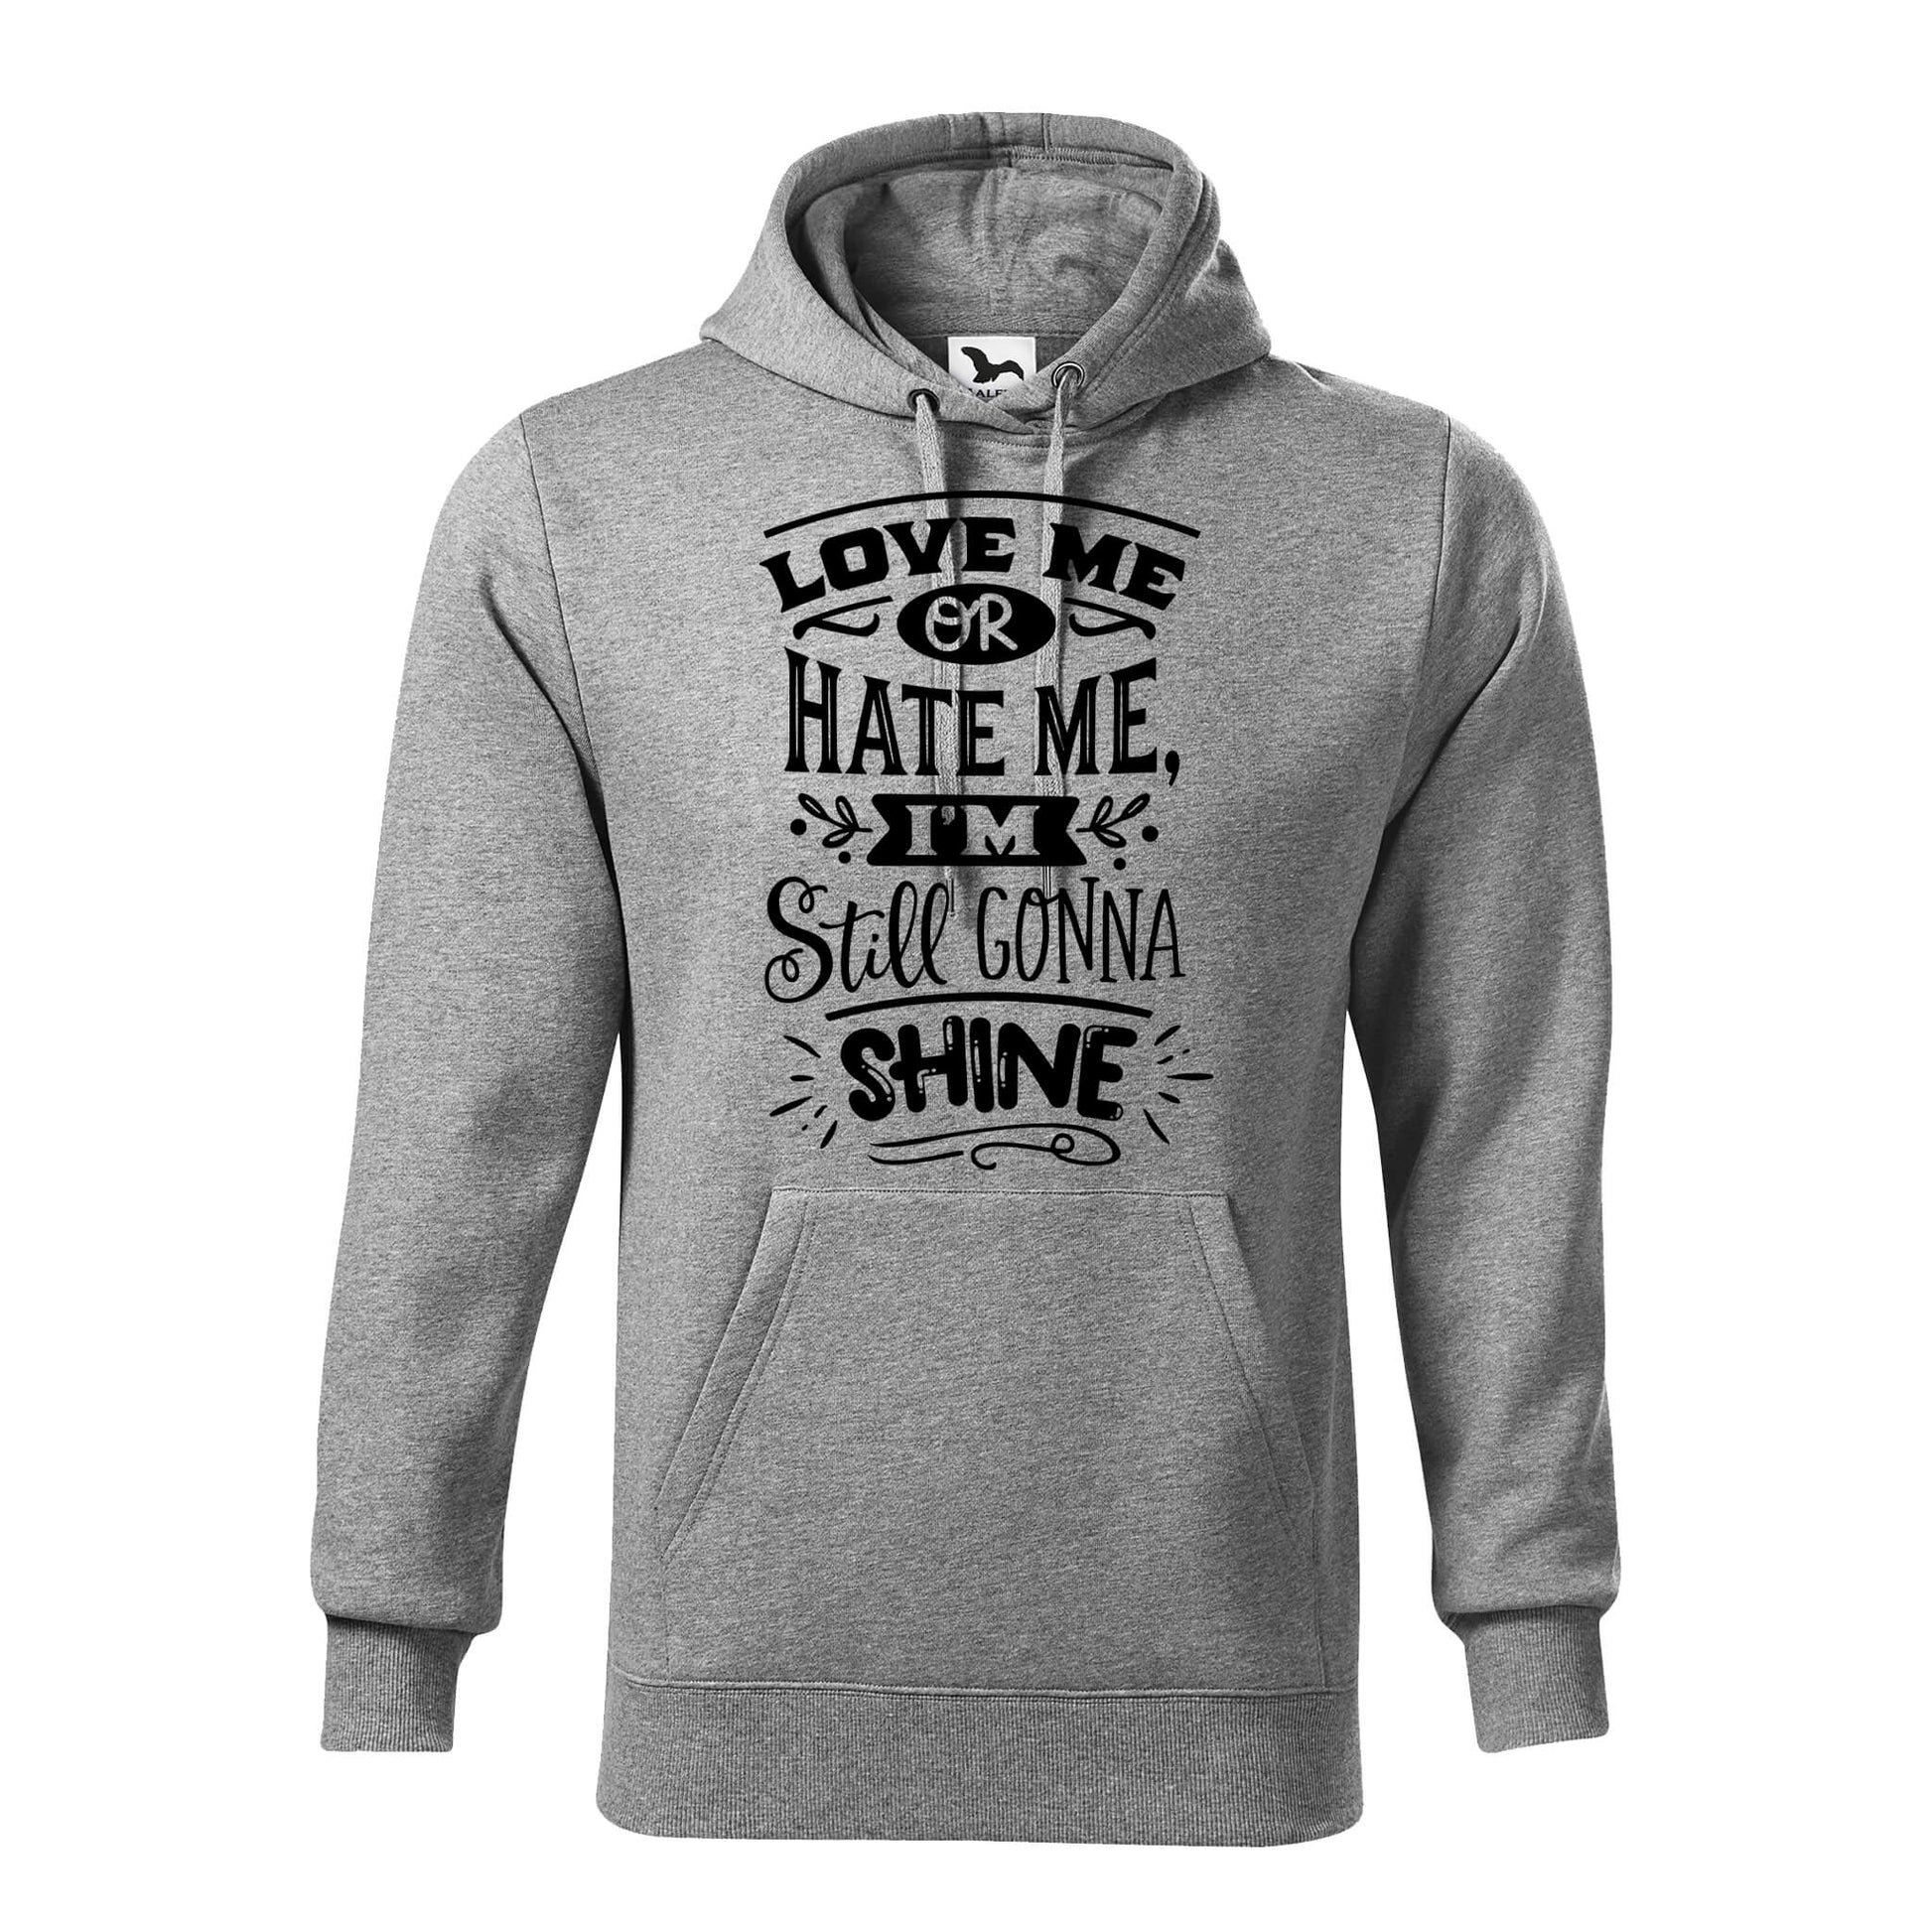 Love me or hate me hoodie - rvdesignprint